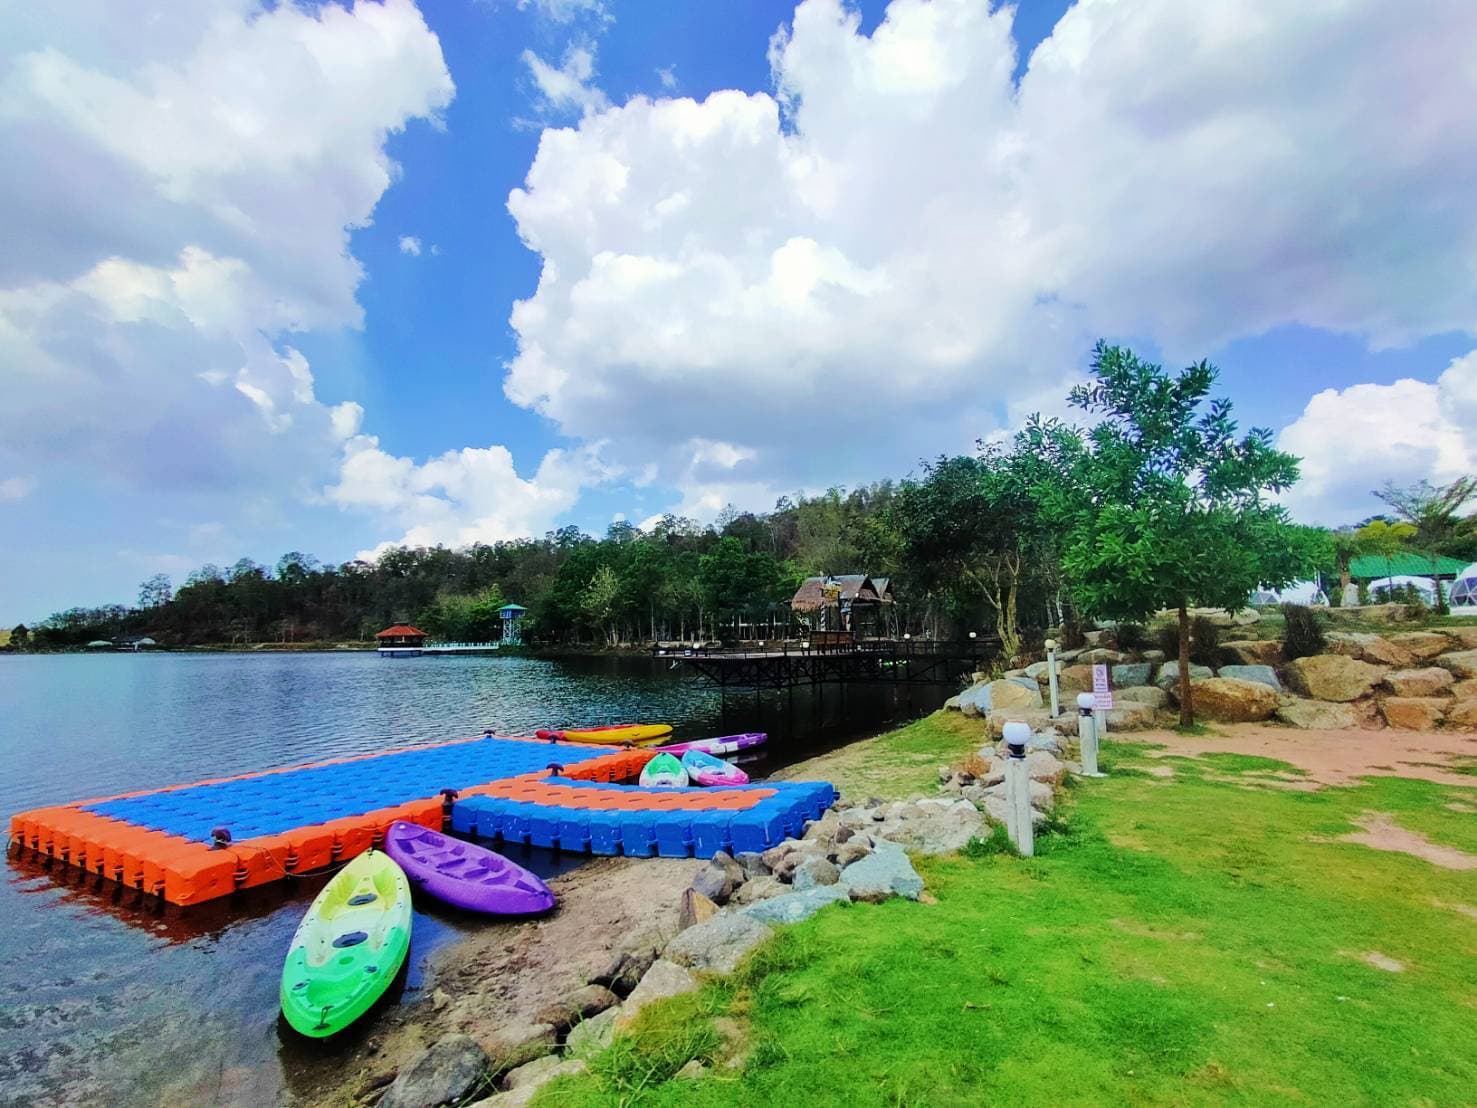 รูป Lake View Resort เขาเขียว ชลบุรี